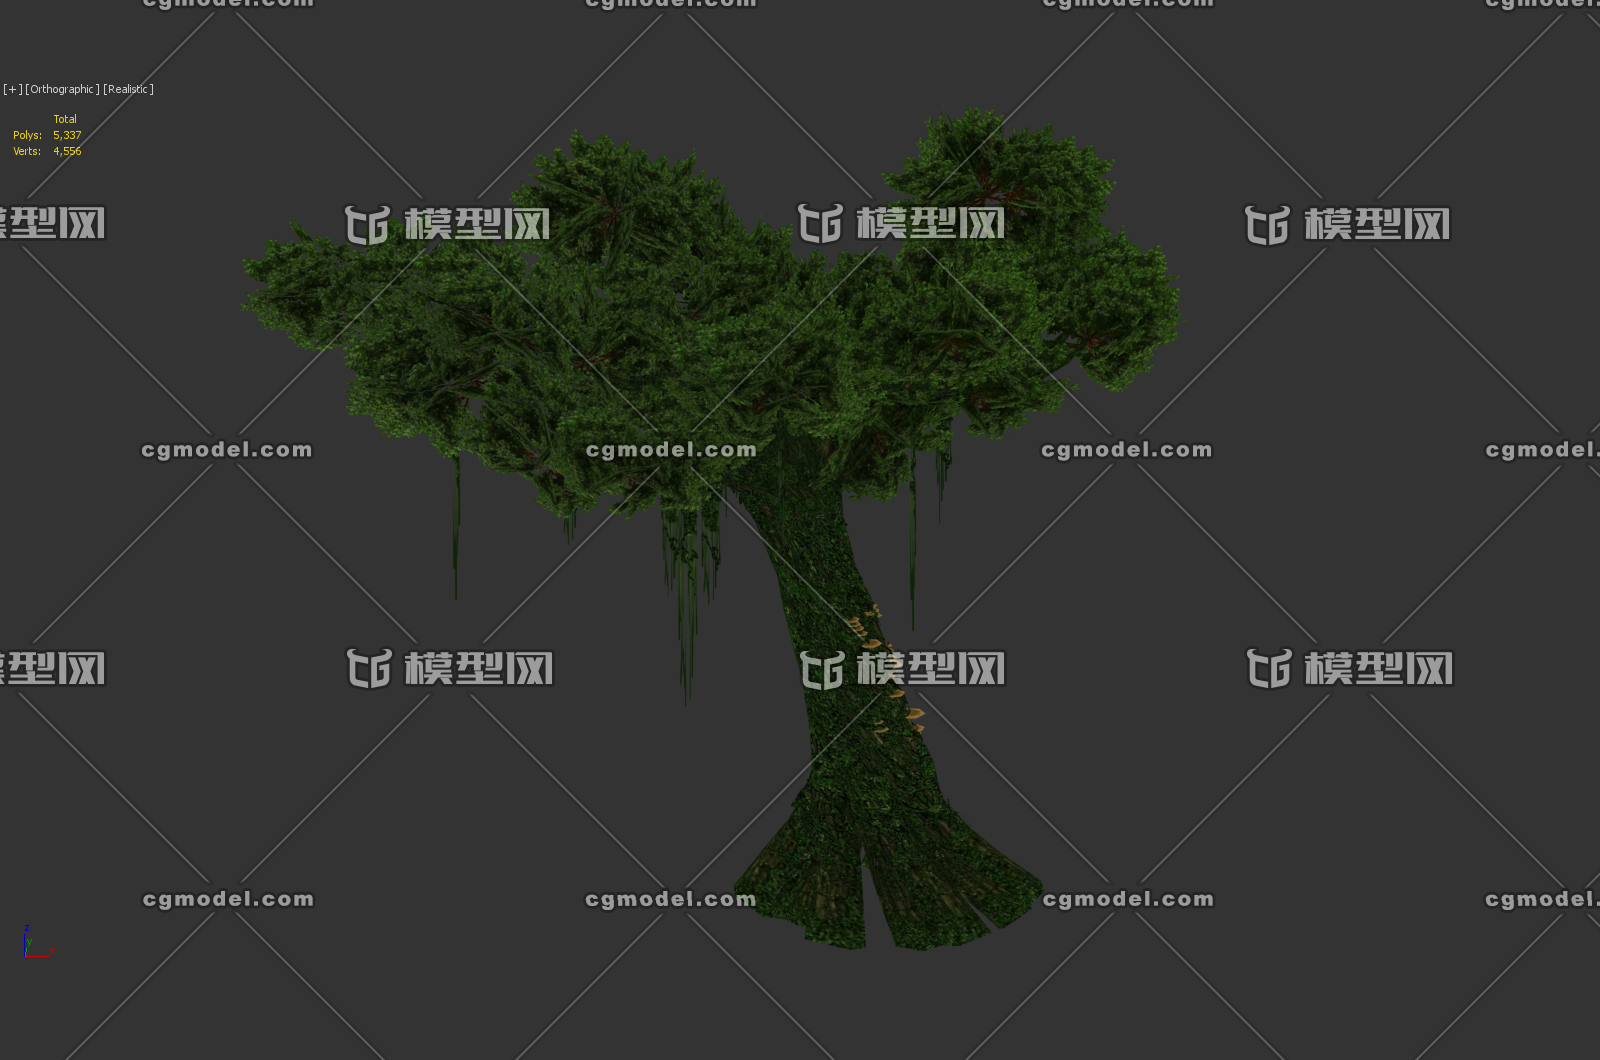 大树 阿凡达树 潘多拉巨树 古树 参天大树 3d模型